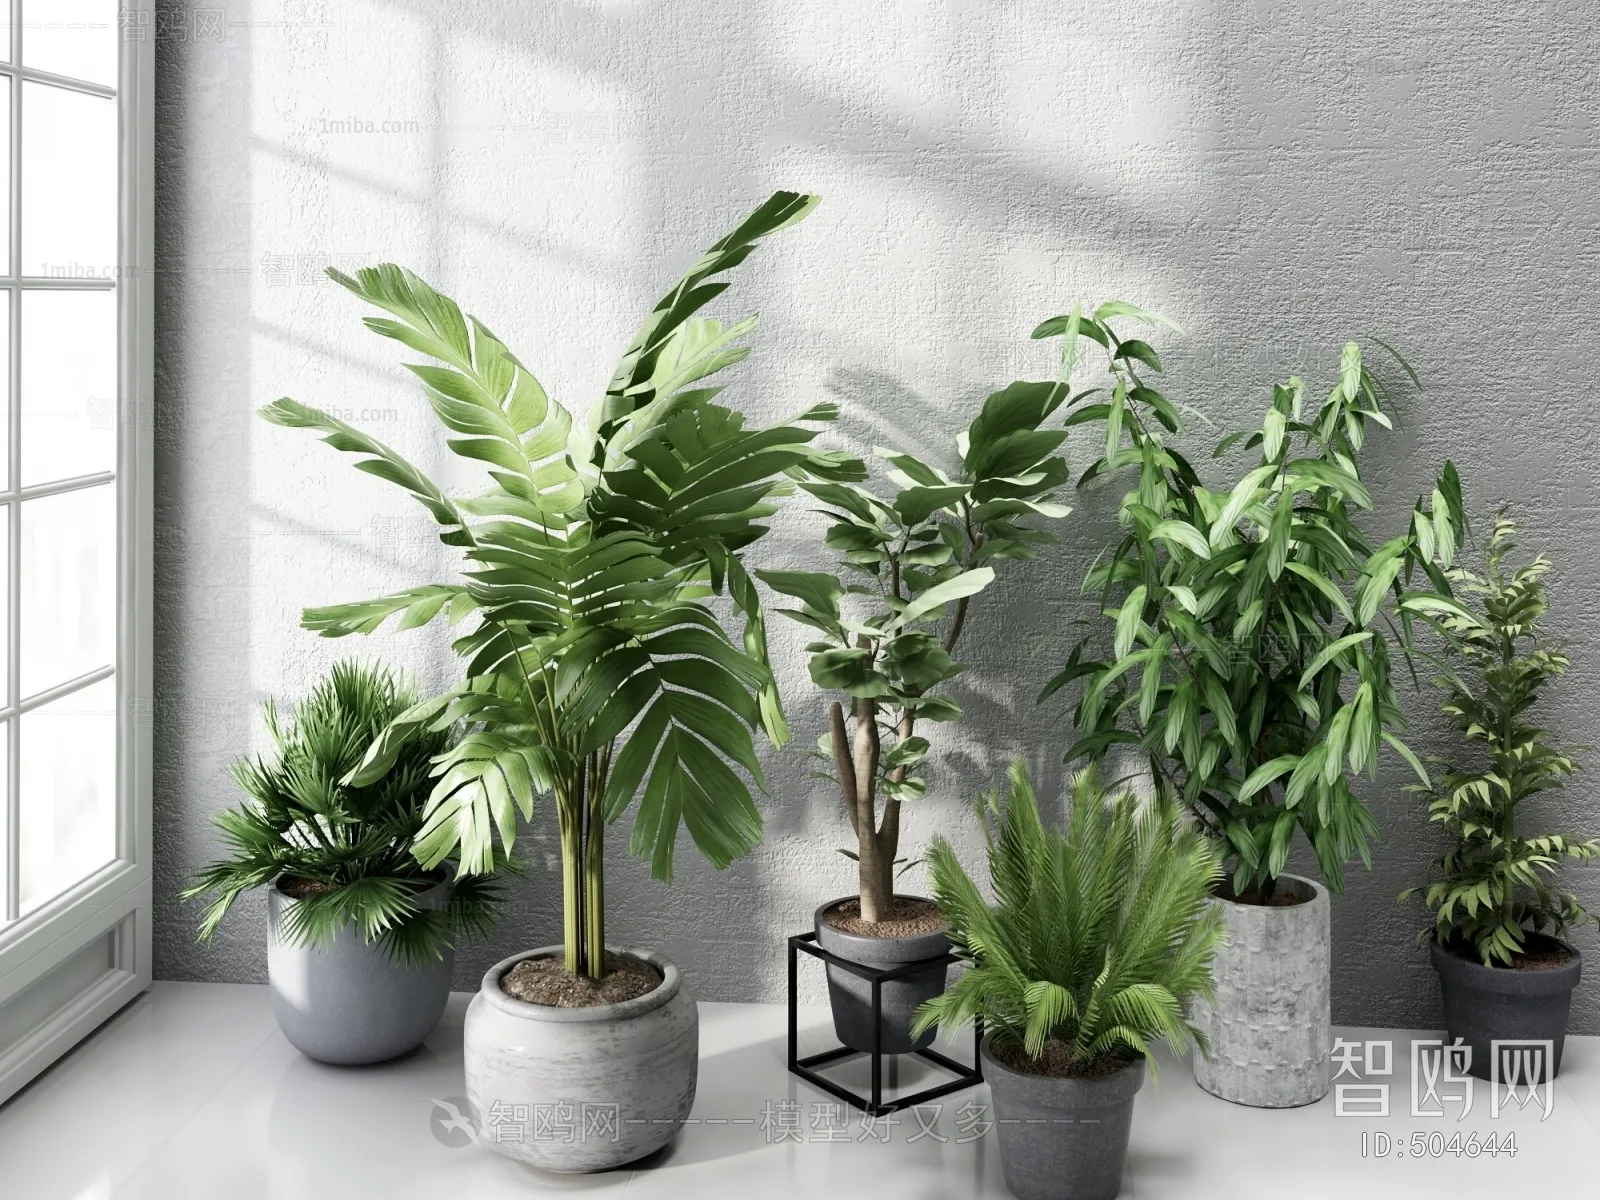 PLANT 3D MODELS – 029